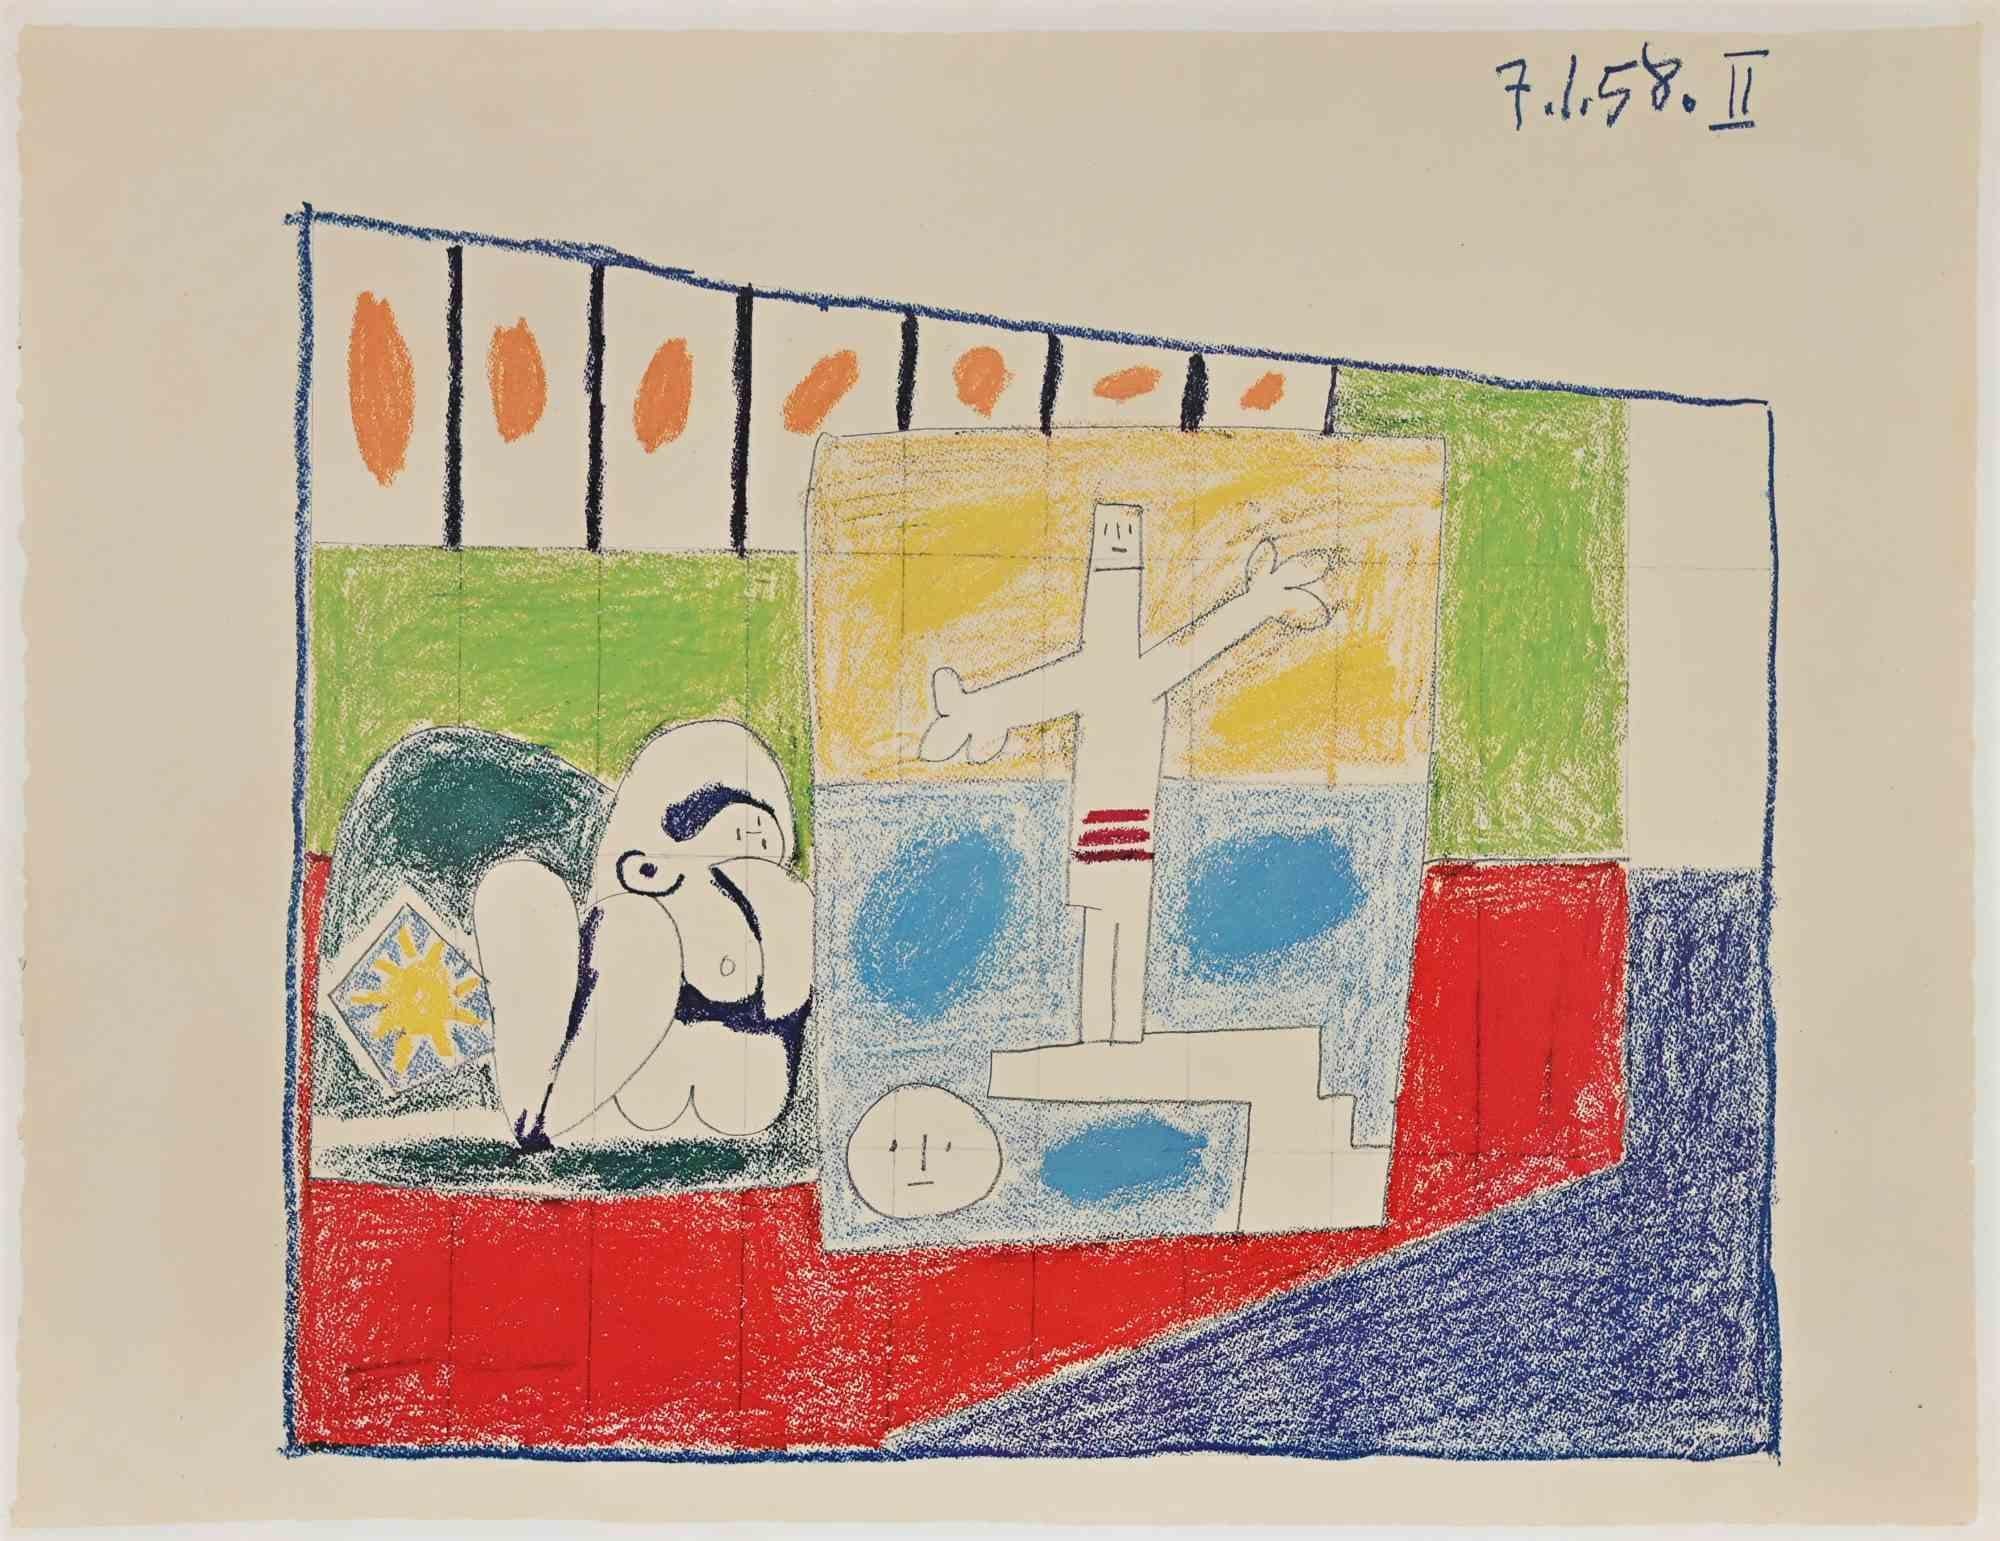 Der Sturz des Ikarus ist eine alte Fotolithografie, die 1958 nach Pablo Picasso entstand.

Originaltitel: "La Chute d'Icare"

Es wurde für die "Dekoration des Foyer des délégués, Unesco-Palast in Paris: Serie von vorbereitenden Studien in Schwarz